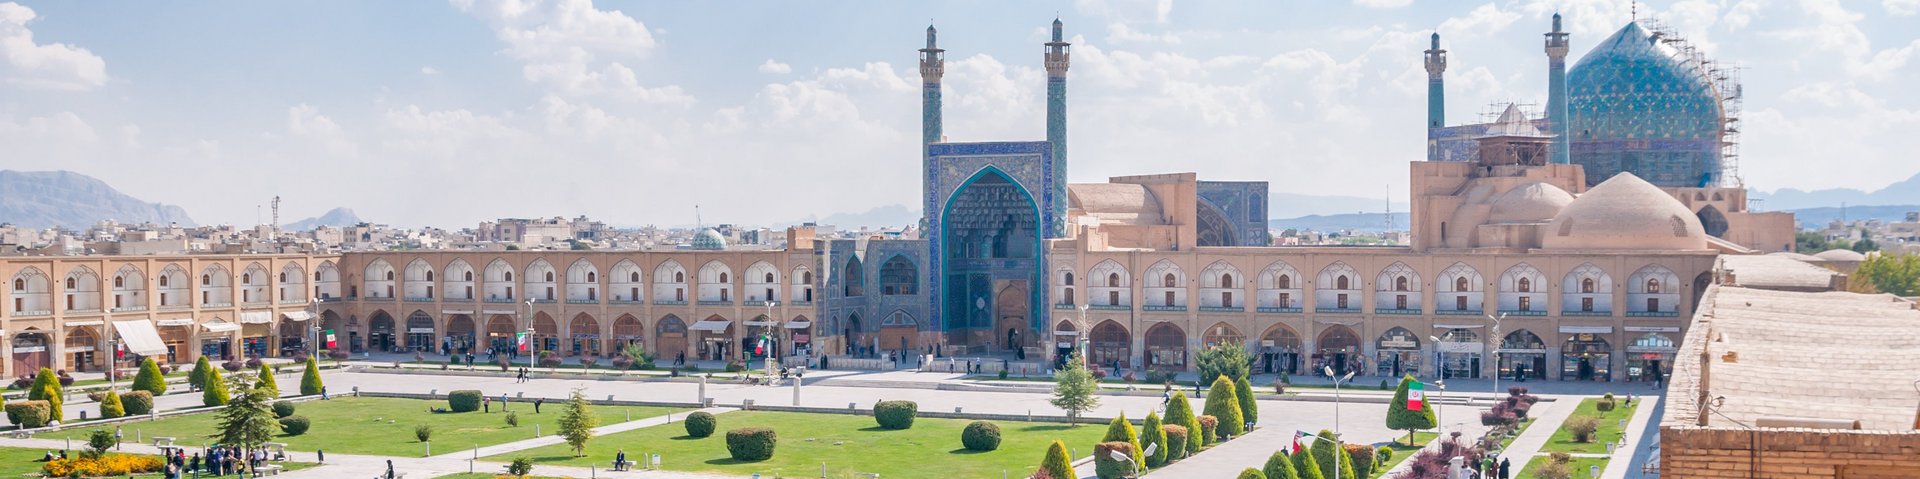 Blick über den riesigen Imam Platz in Isfahan, Iran